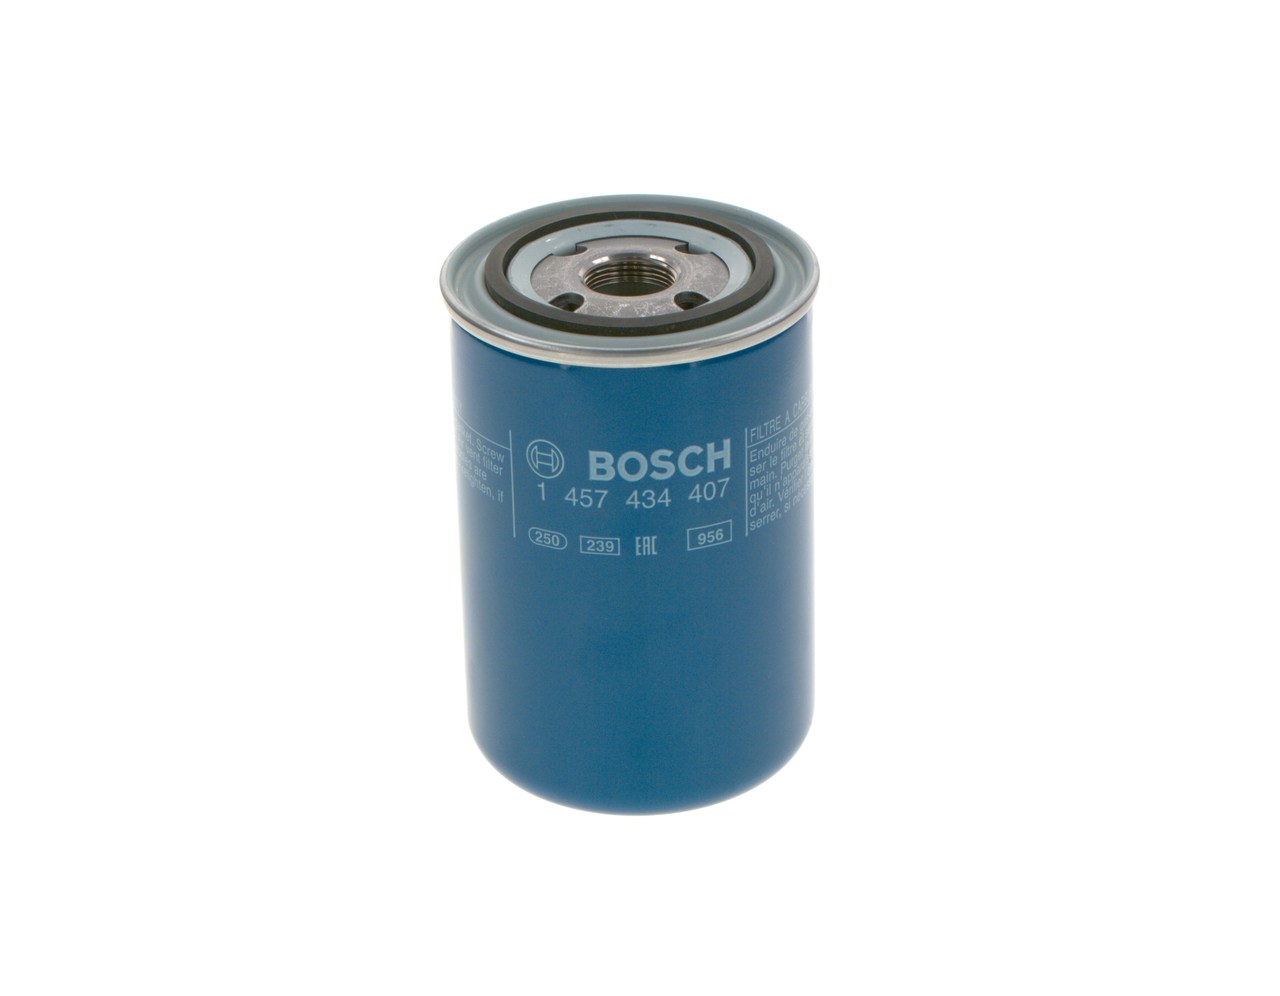 BOSCH 1 457 434 407 Fuel filter Spin-on Filter